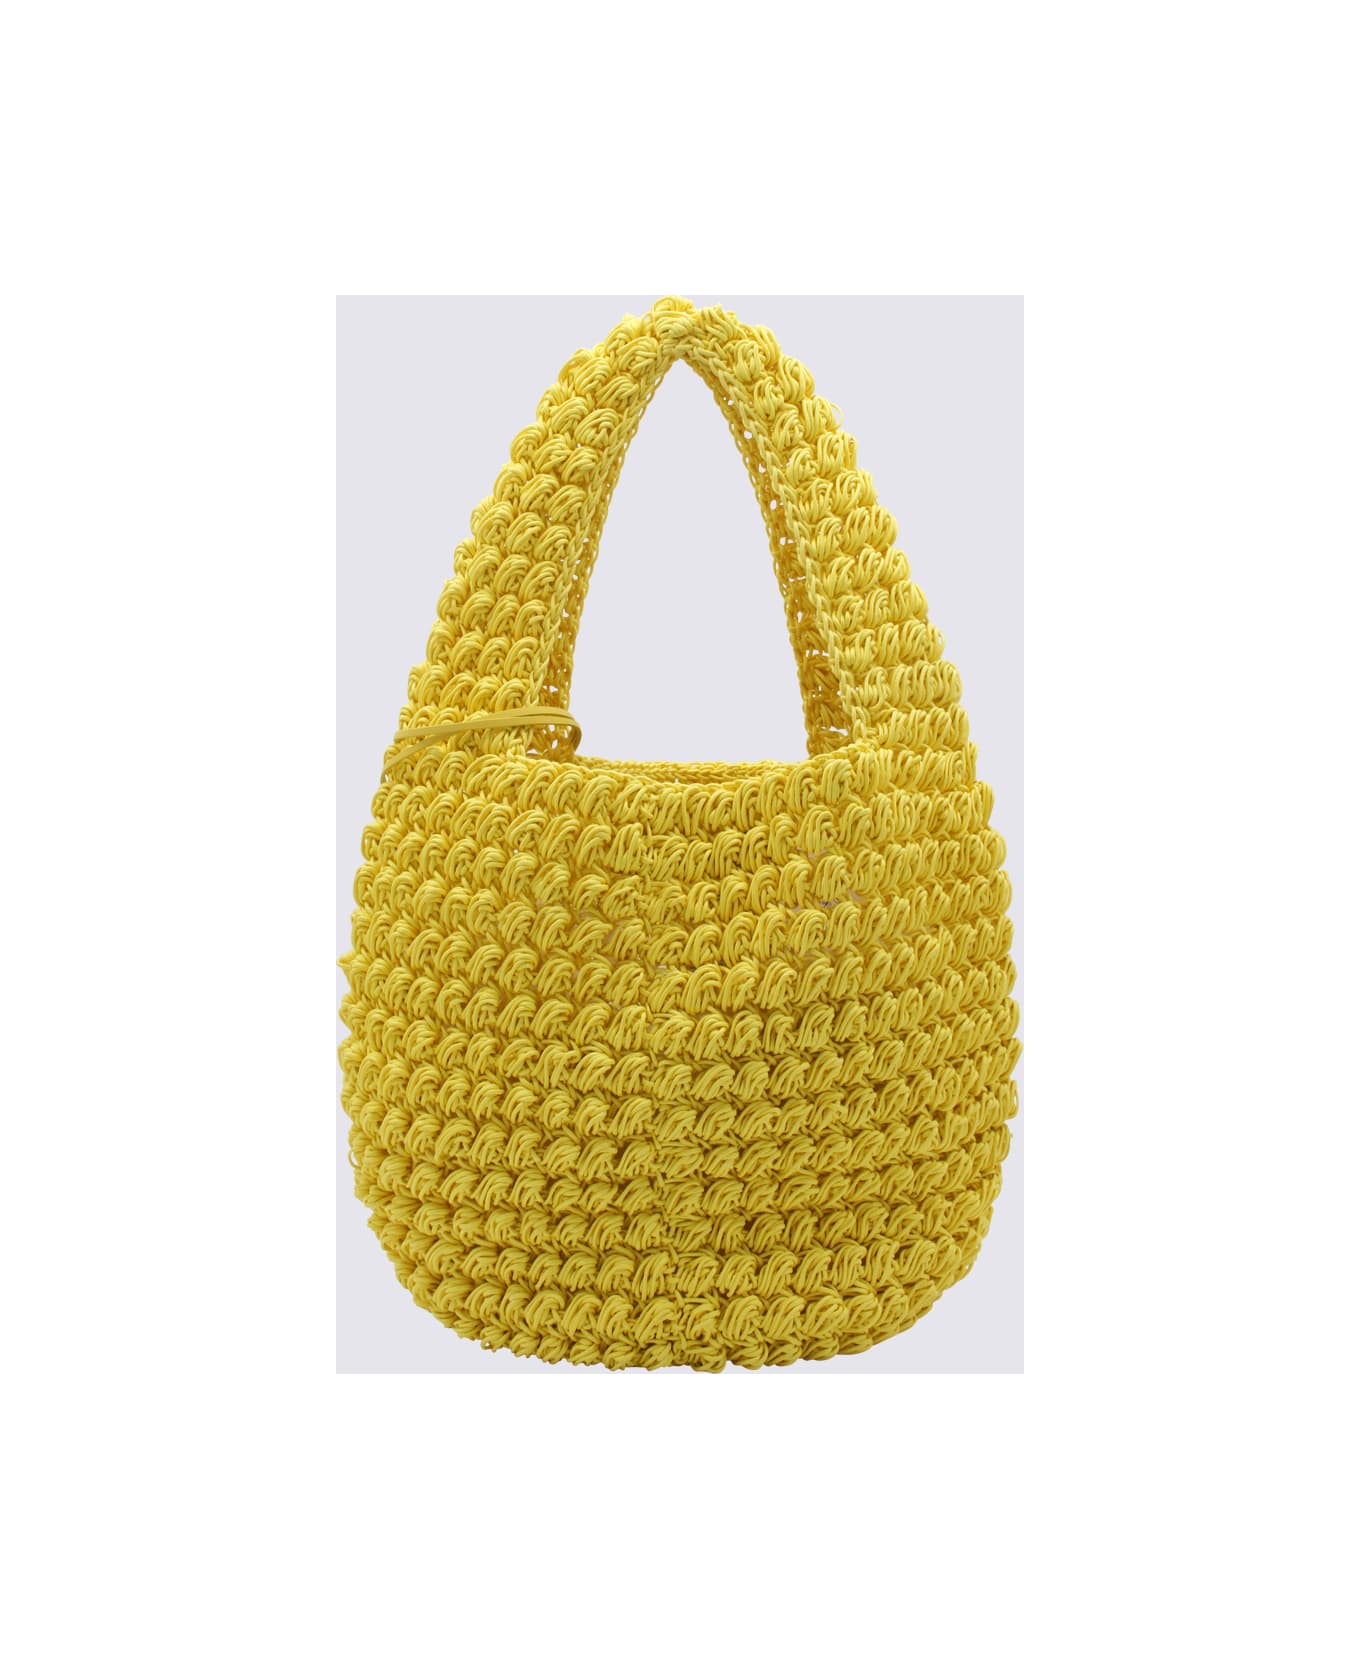 J.W. Anderson Yellow Cotton Popcorn Basket Tote Bag - Yellow